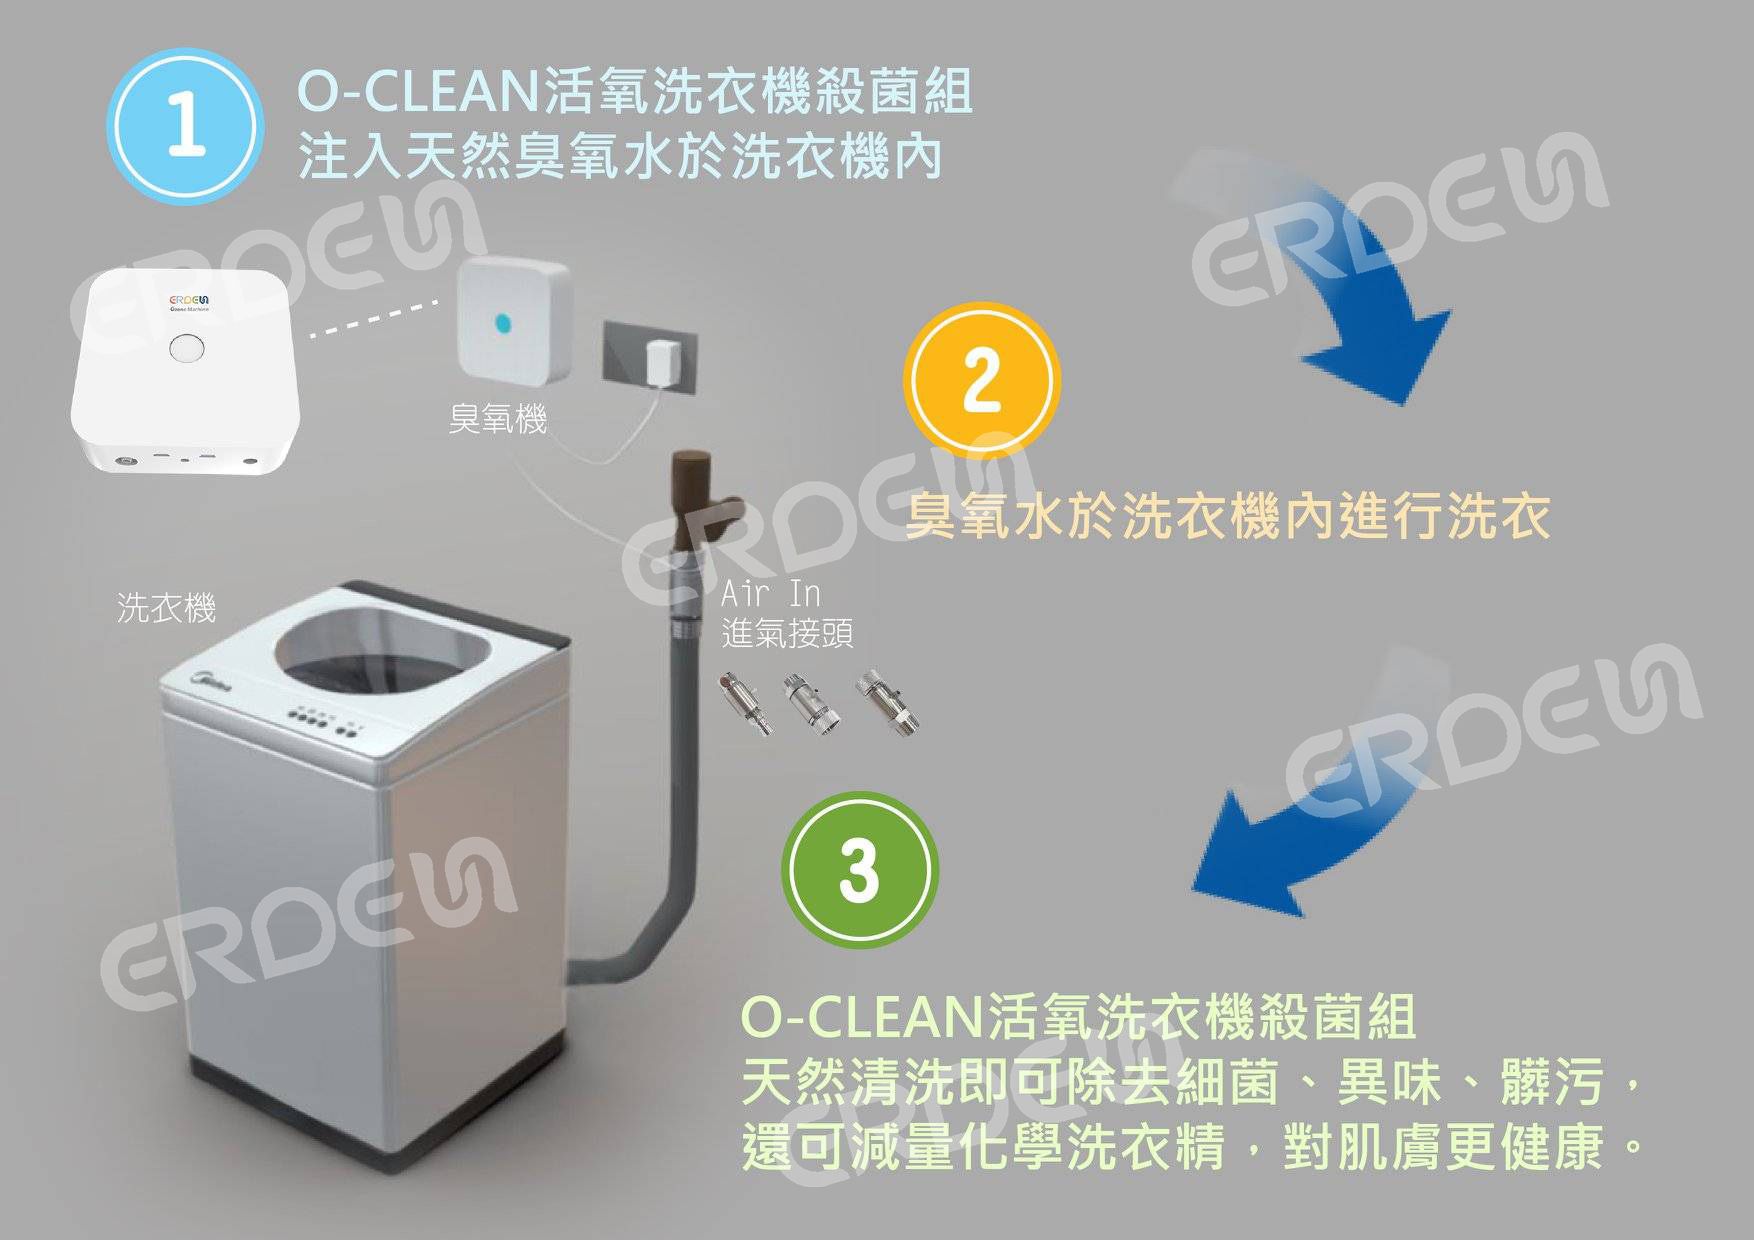 O-Clean 오존 세탁기 과정